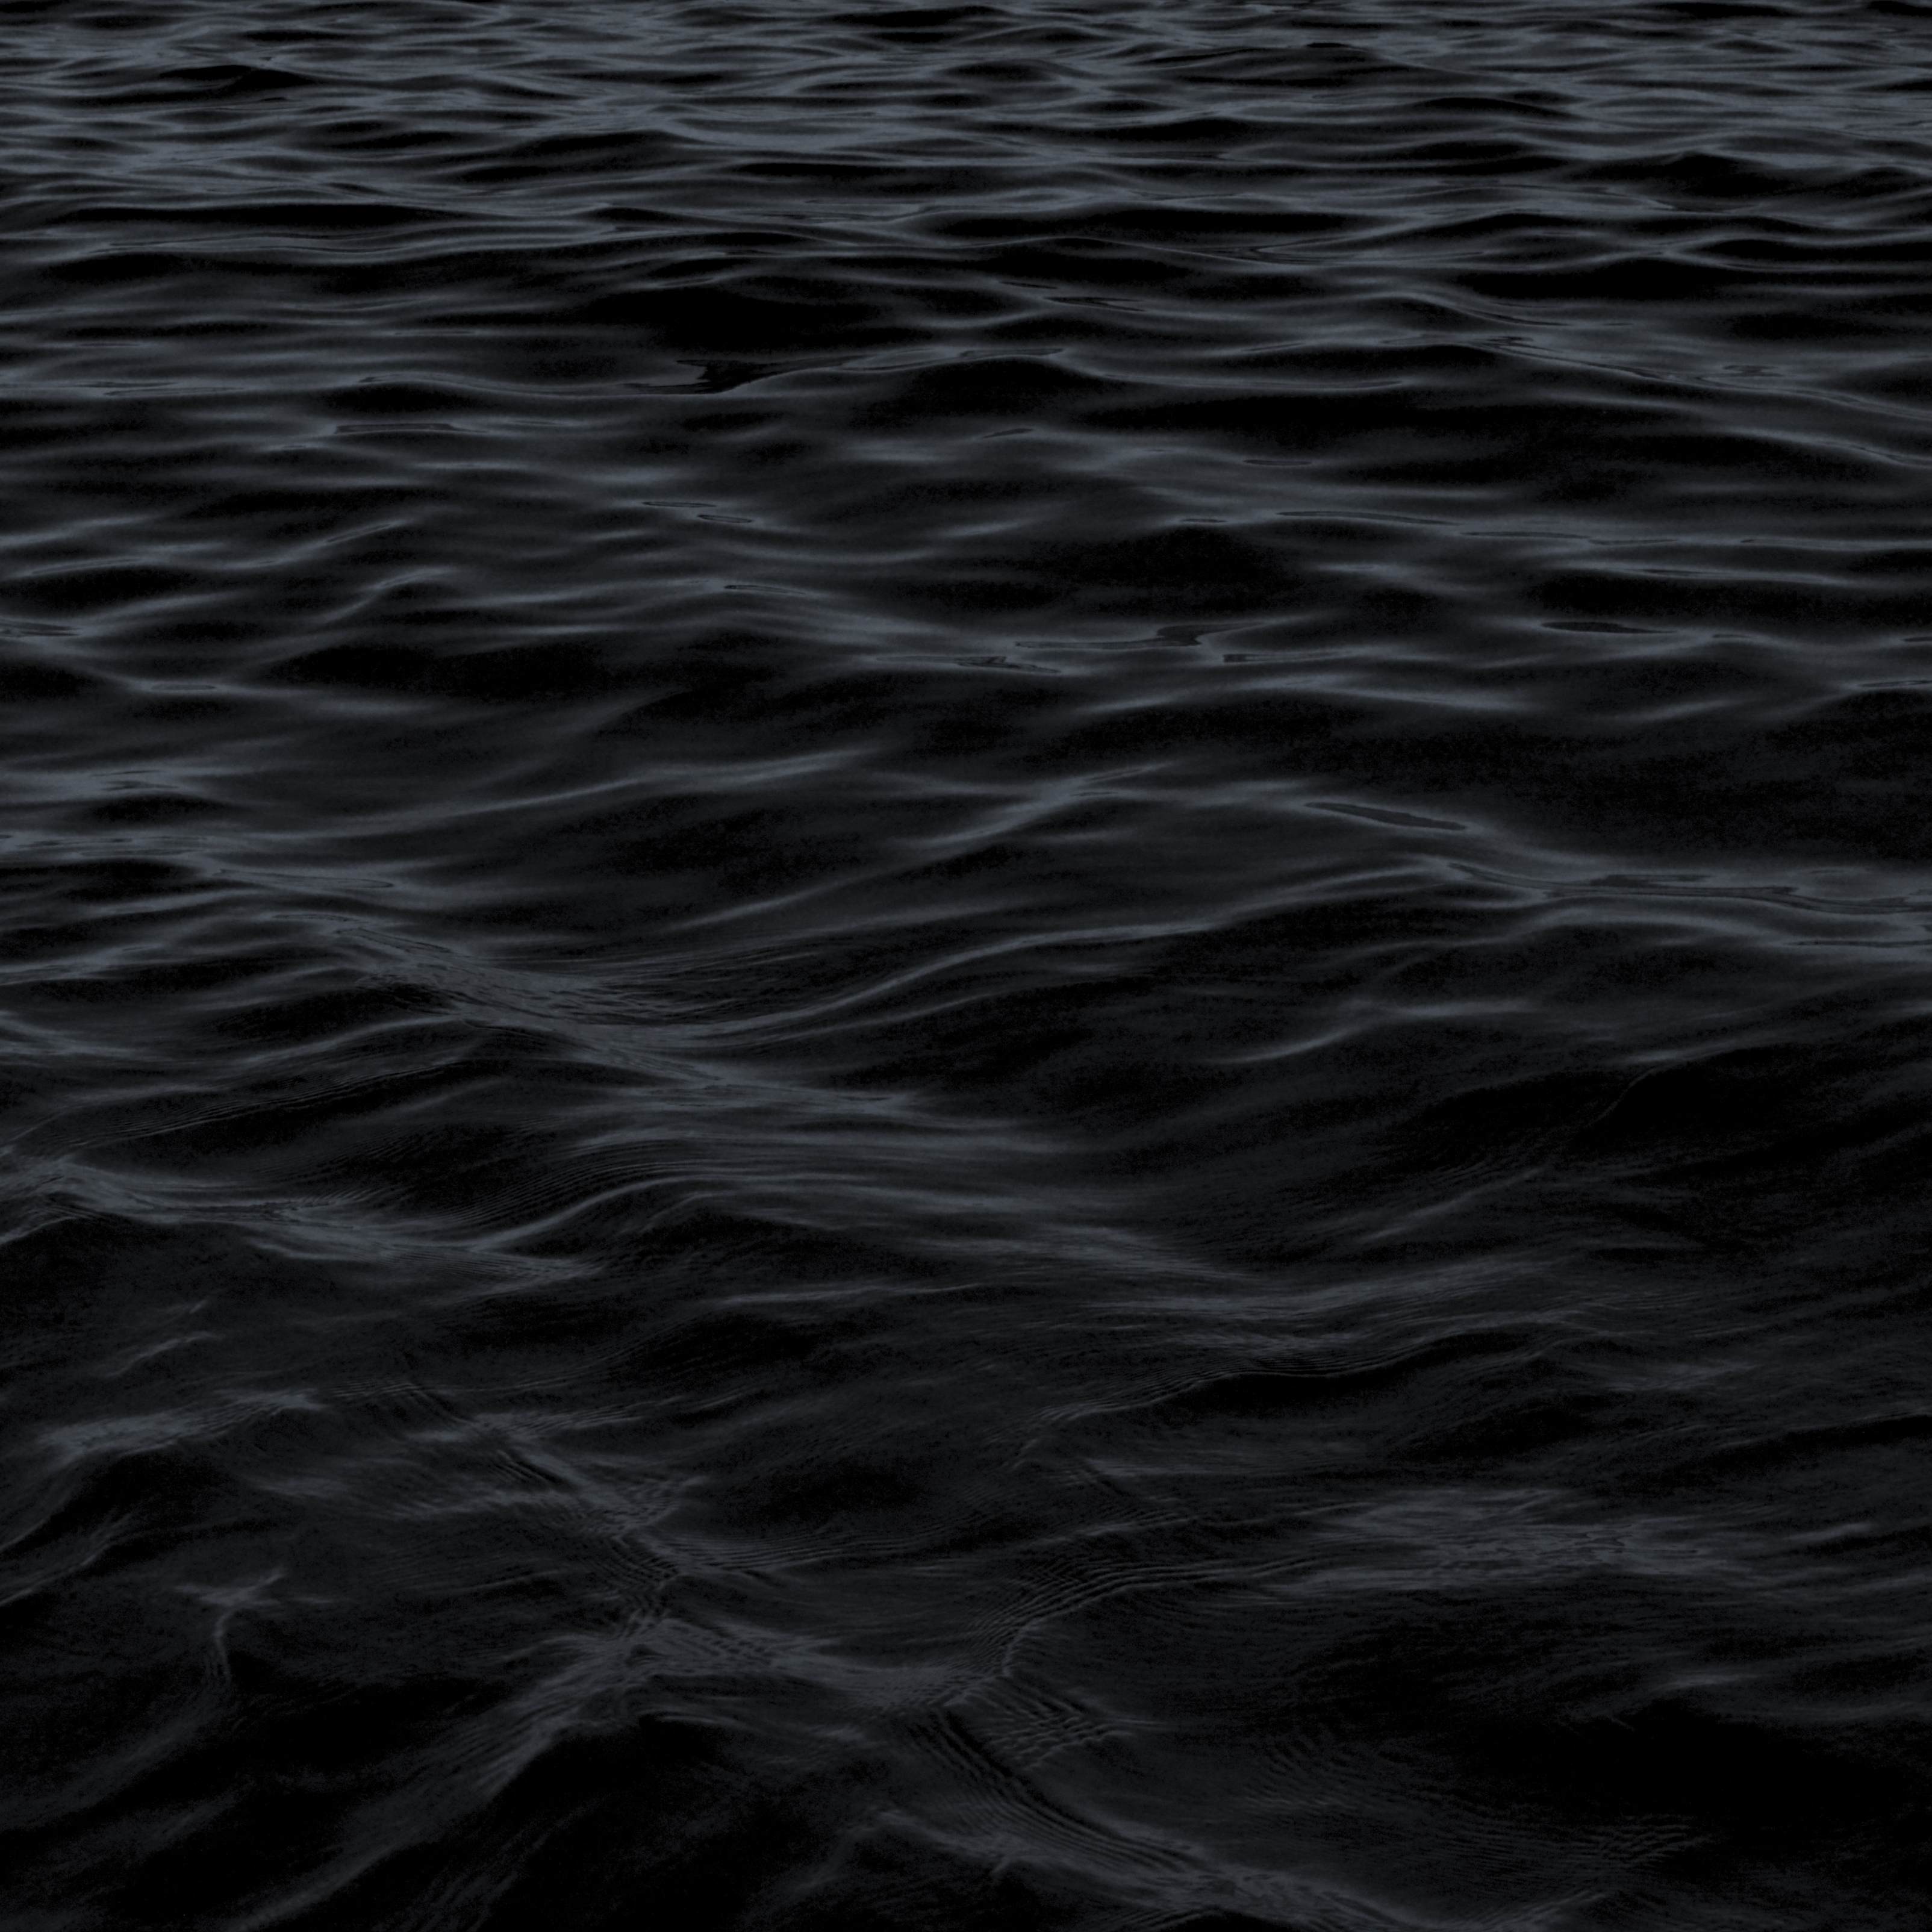 iPad Wallpapers Dark Water Waves Sea Pattern iPad Wallpaper 3208x3208 px